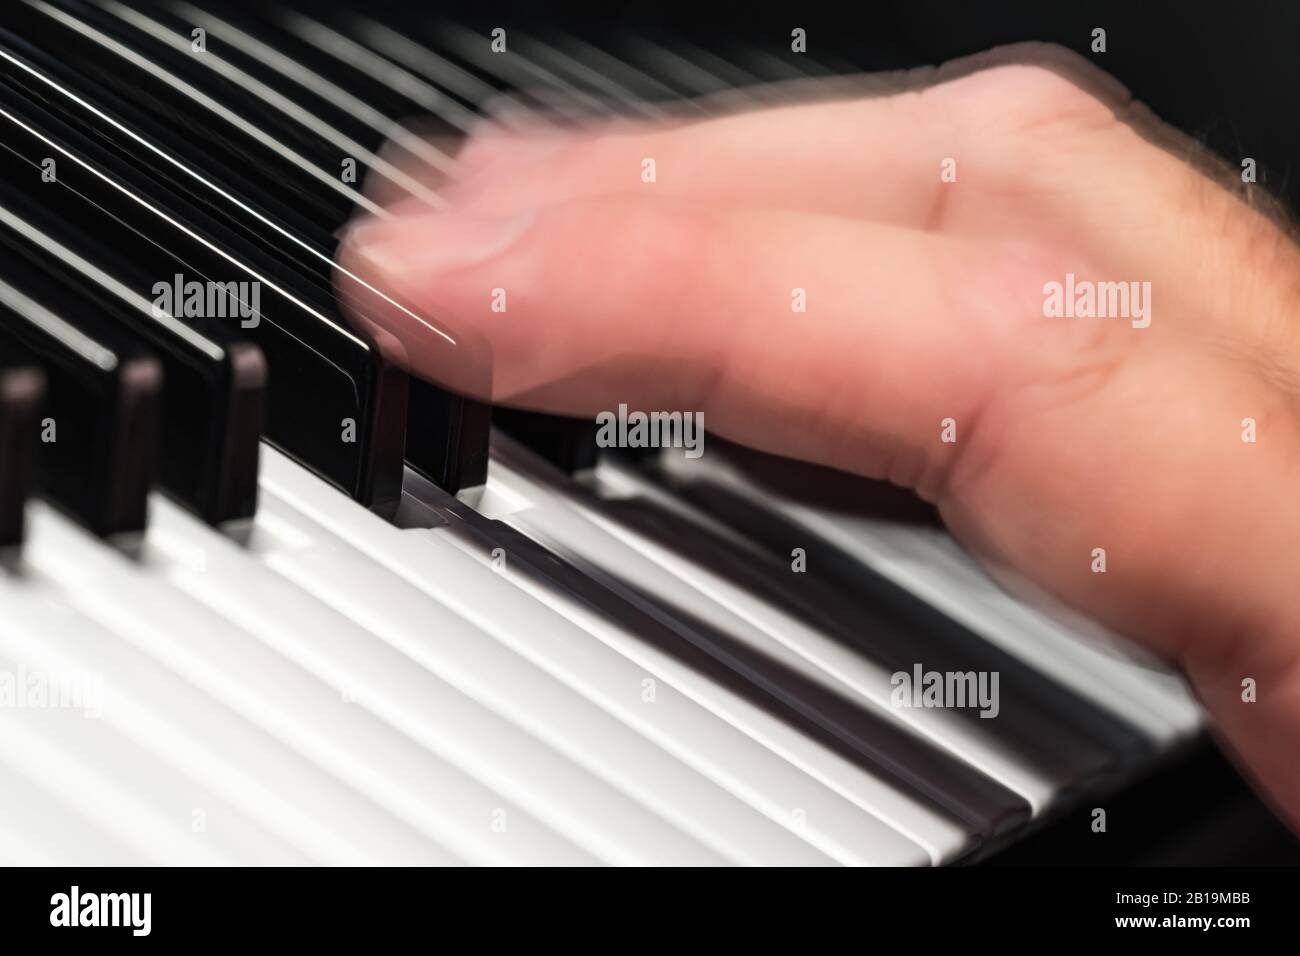 Passez rapidement la main sur des notes ou des touches d'un piano ou d'un  clavier synthétiseur pour écouter rapidement de la musique, avec un flou de  mouvement. Concept musicien Photo Stock -